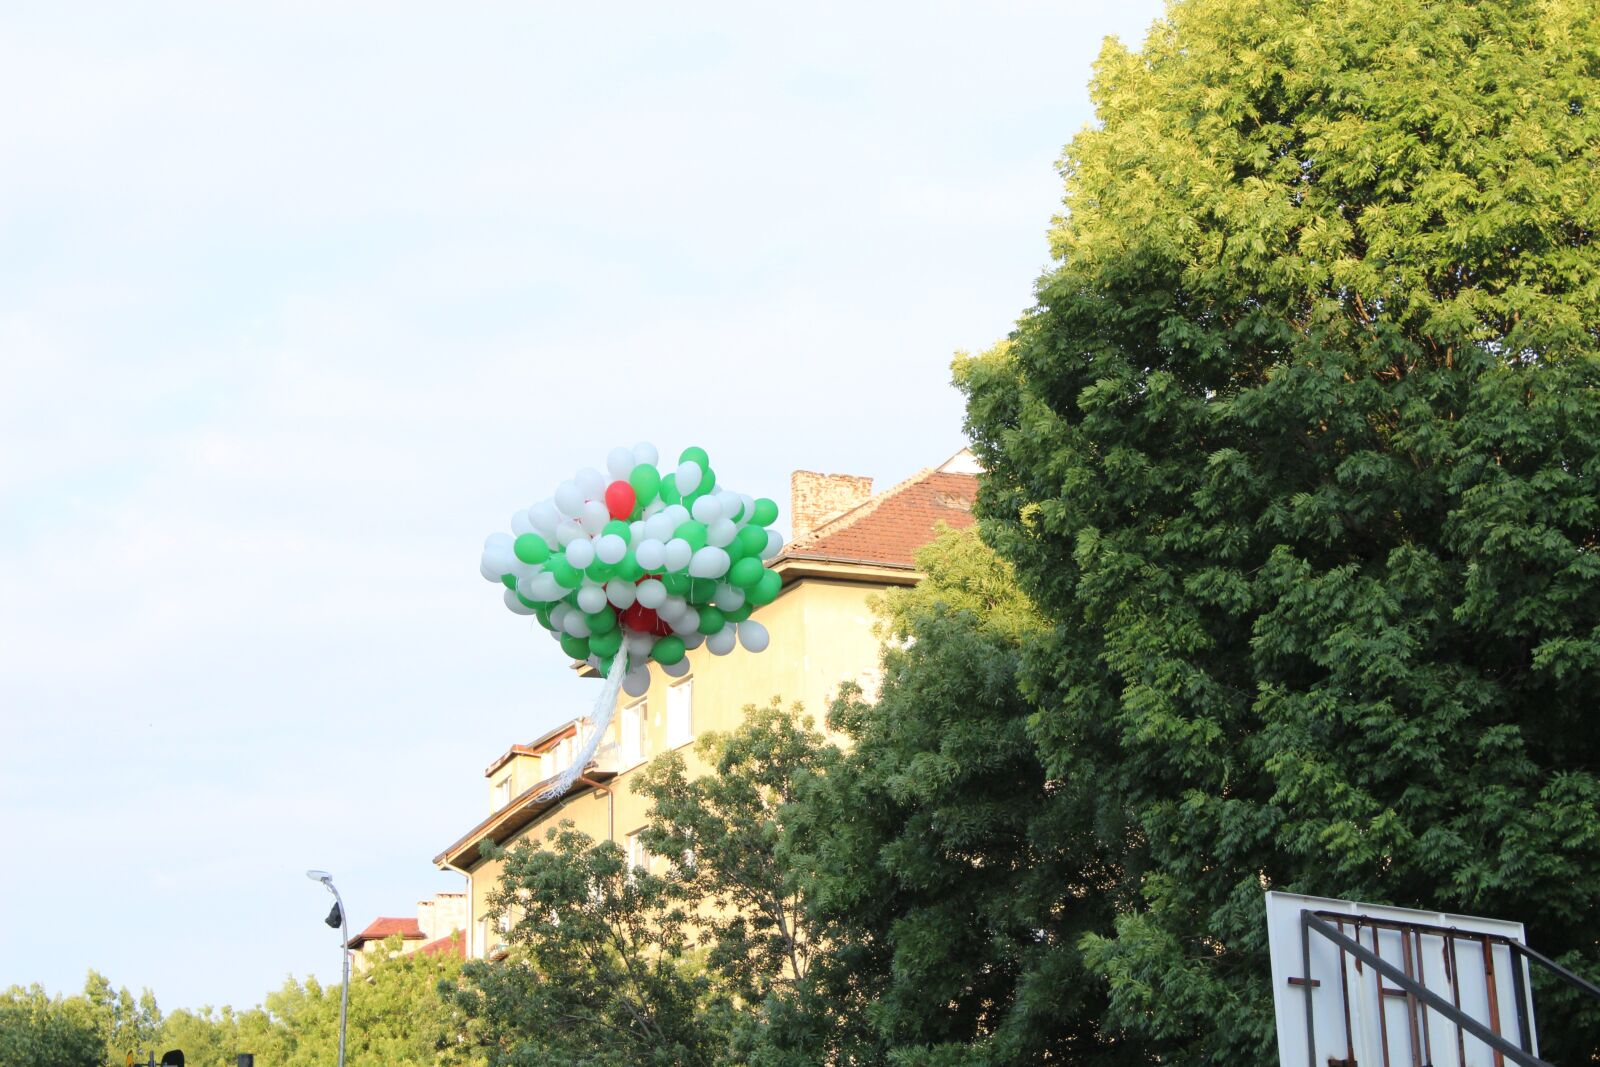 Canon EOS 1200D (EOS Rebel T5 / EOS Kiss X70 / EOS Hi) sample photo. Balloons, holiday, sky photography